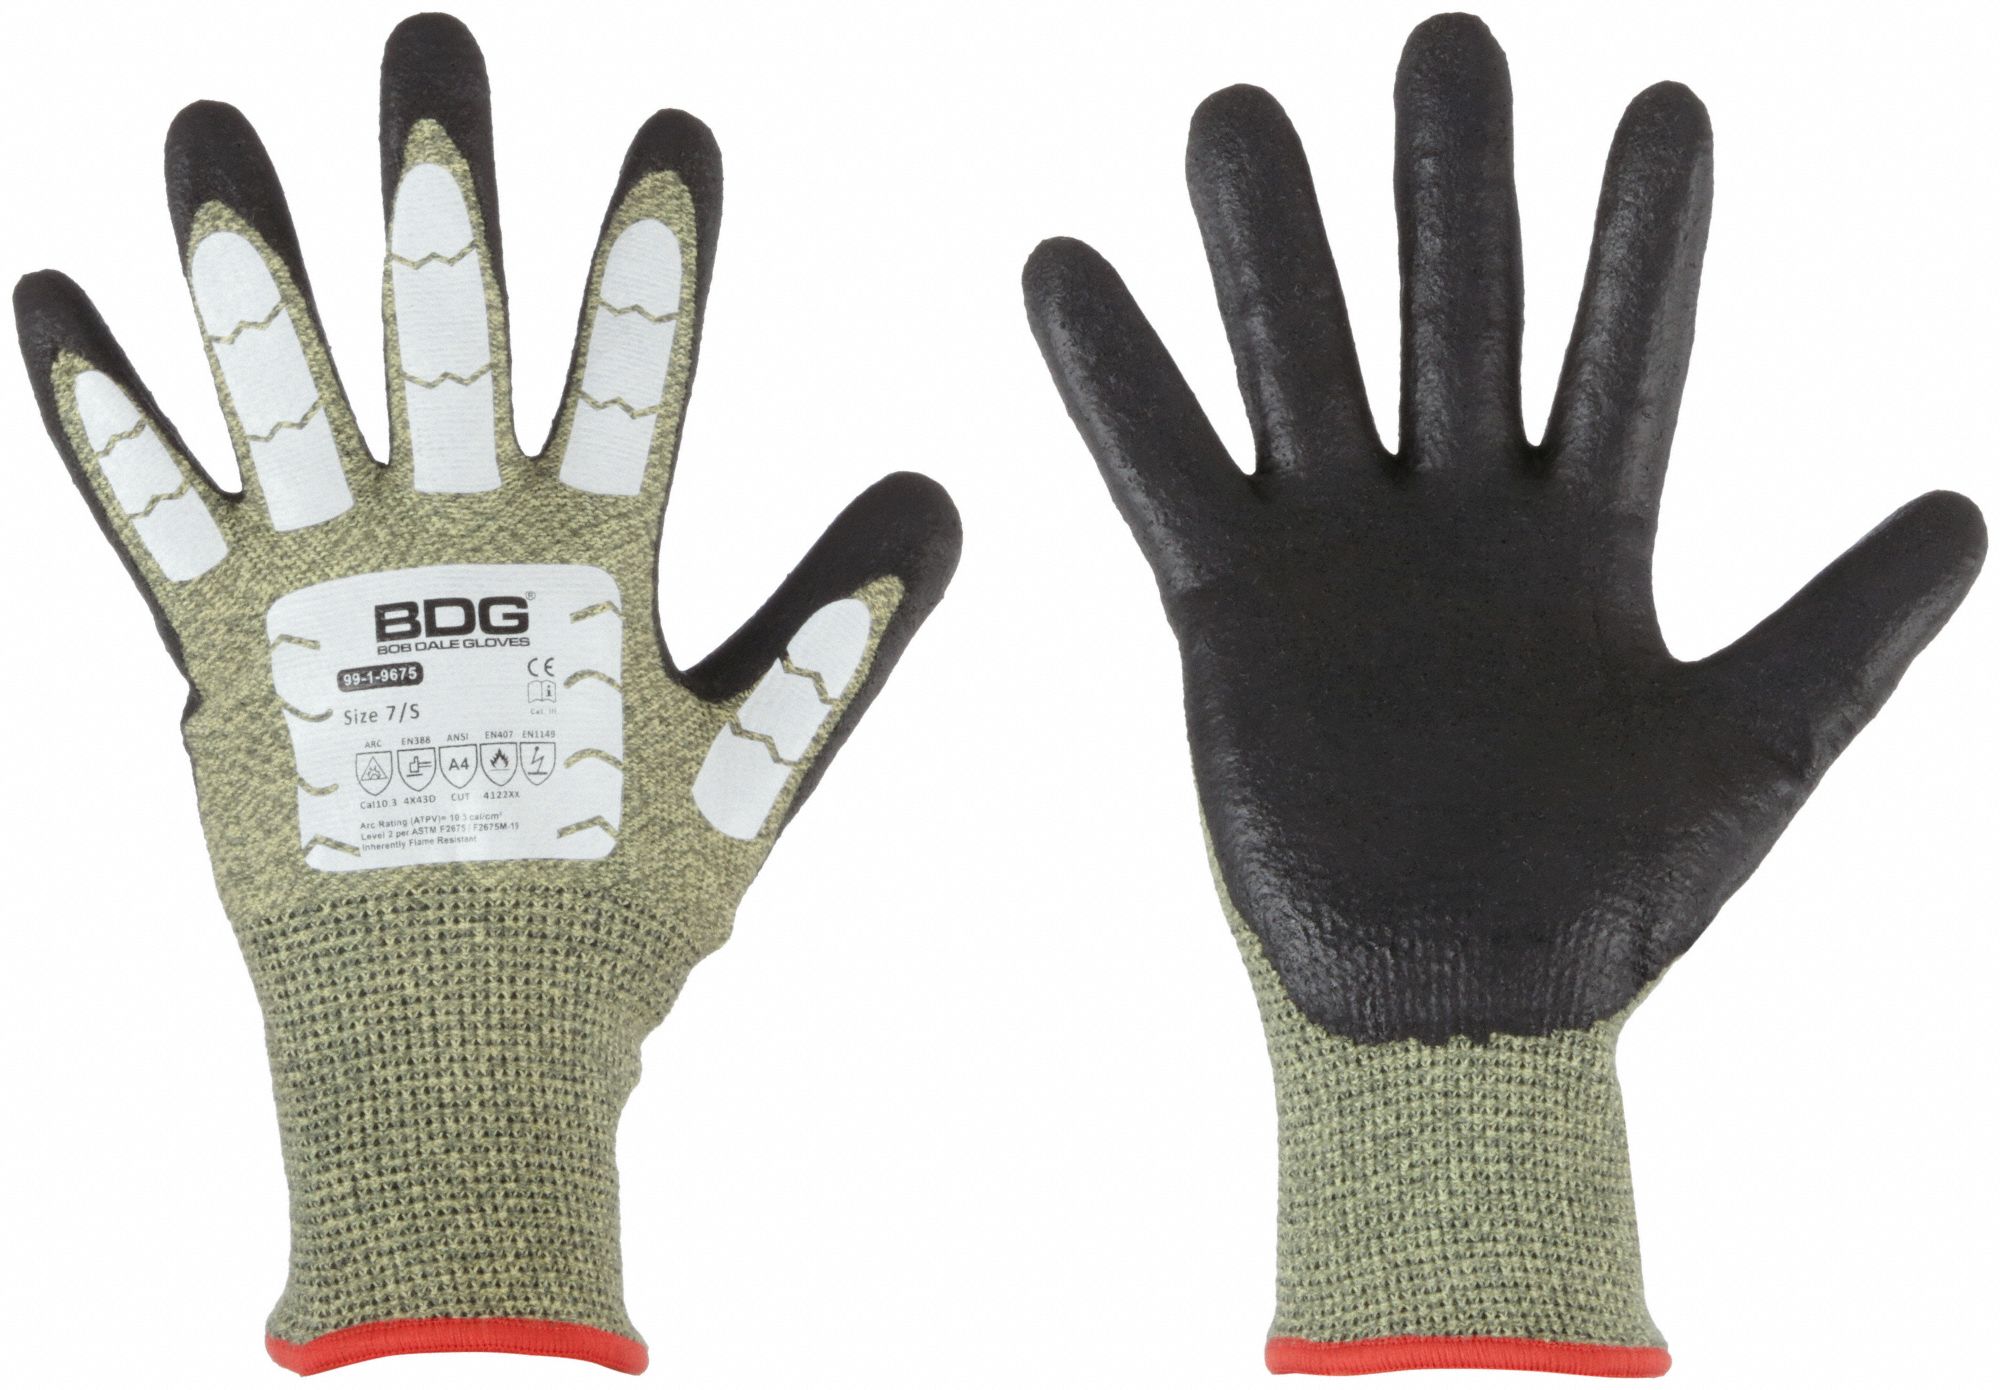 Plumbing Gloves  Bob Dale Gloves (BDG)